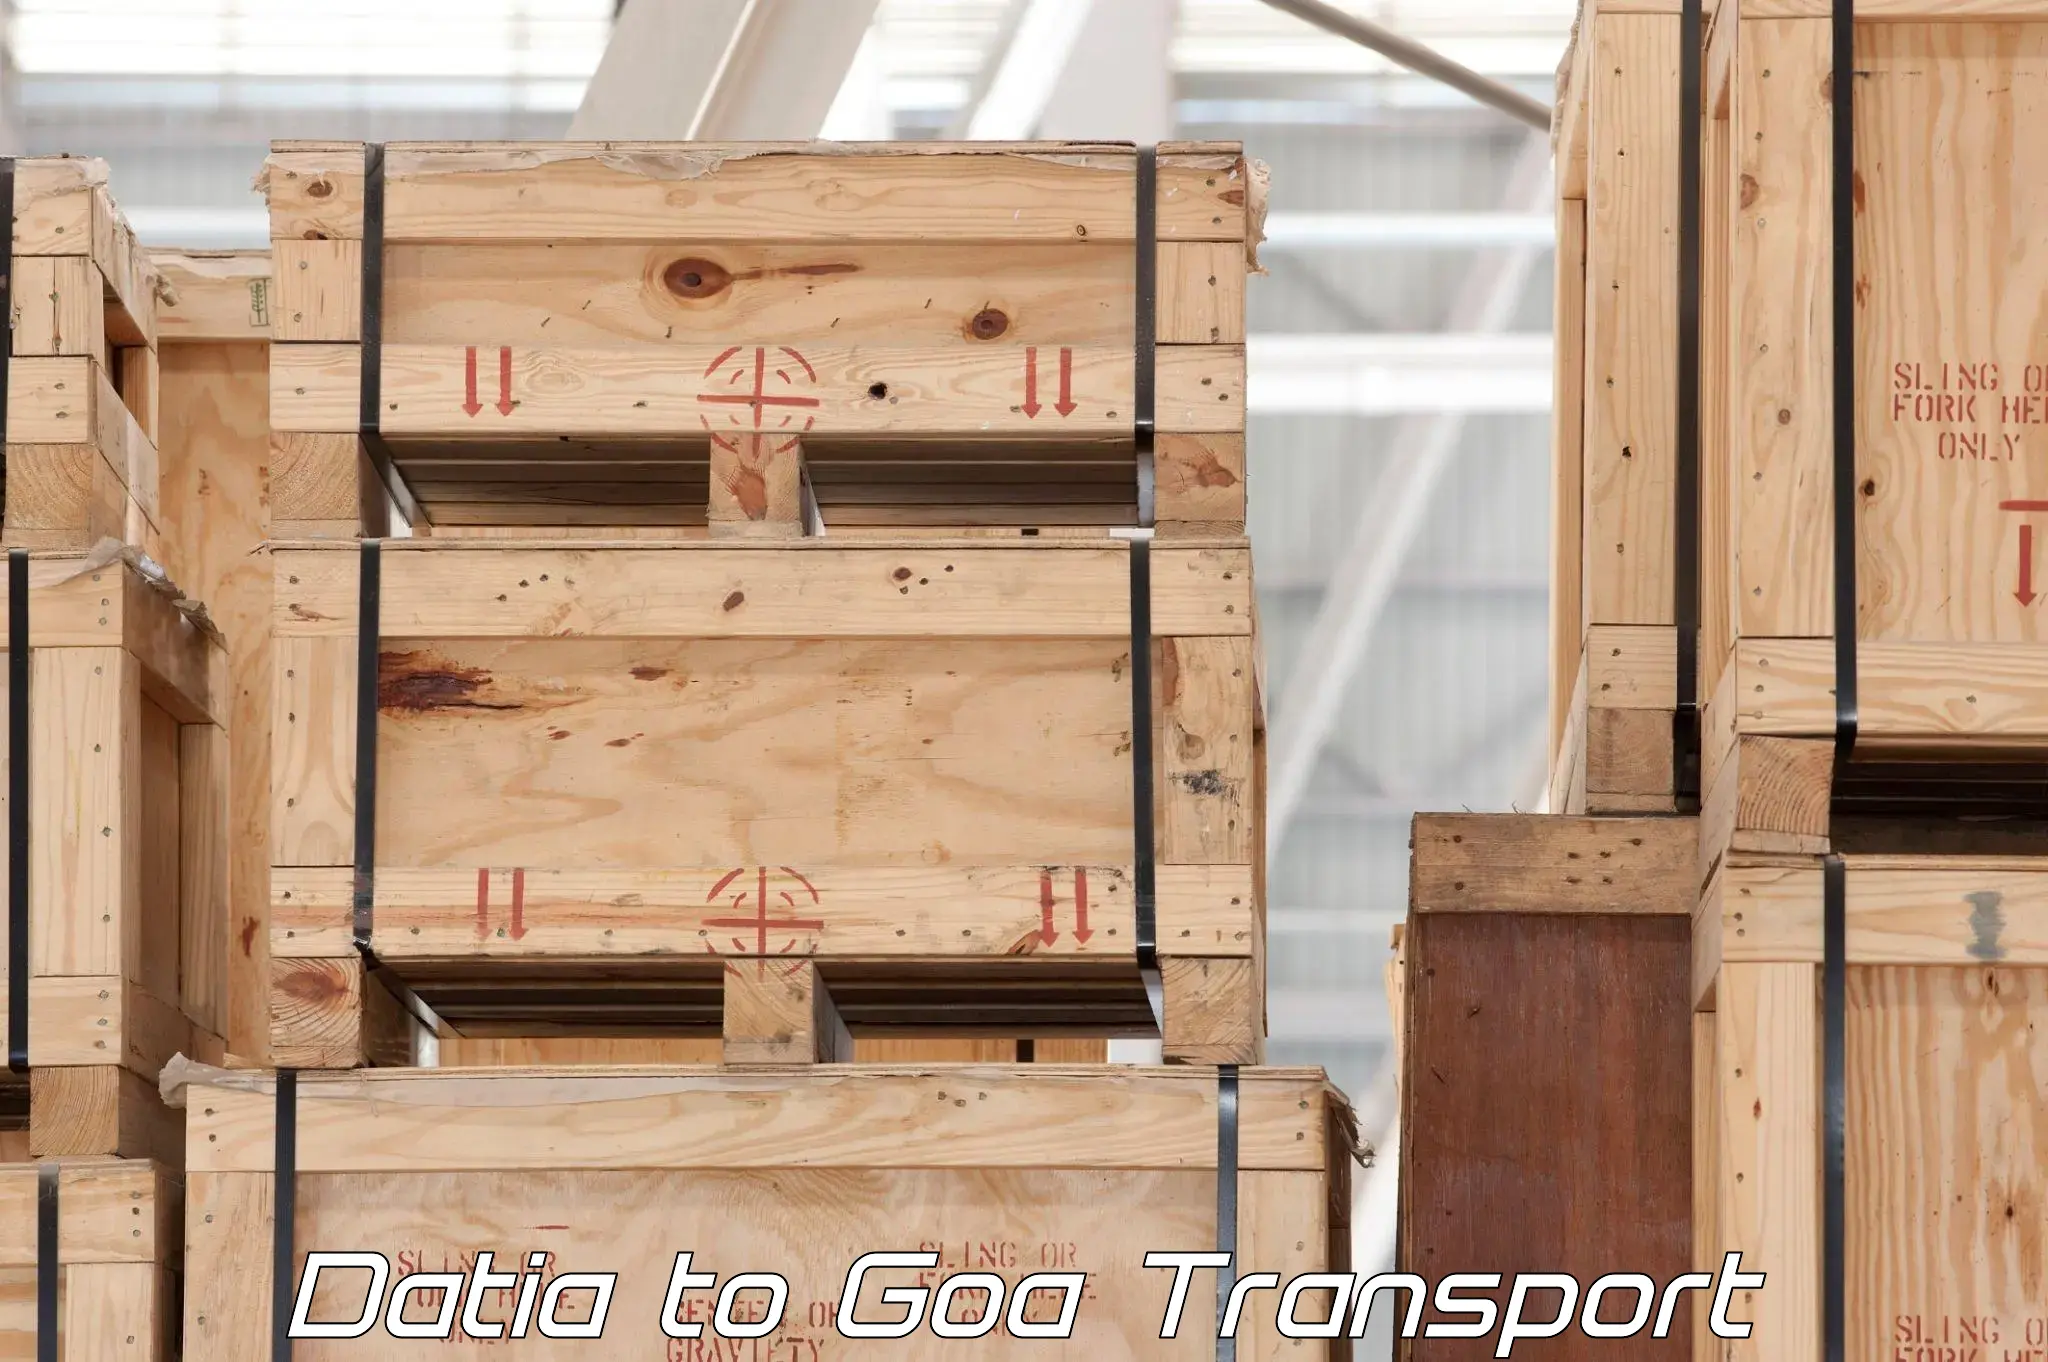 International cargo transportation services Datia to Vasco da Gama